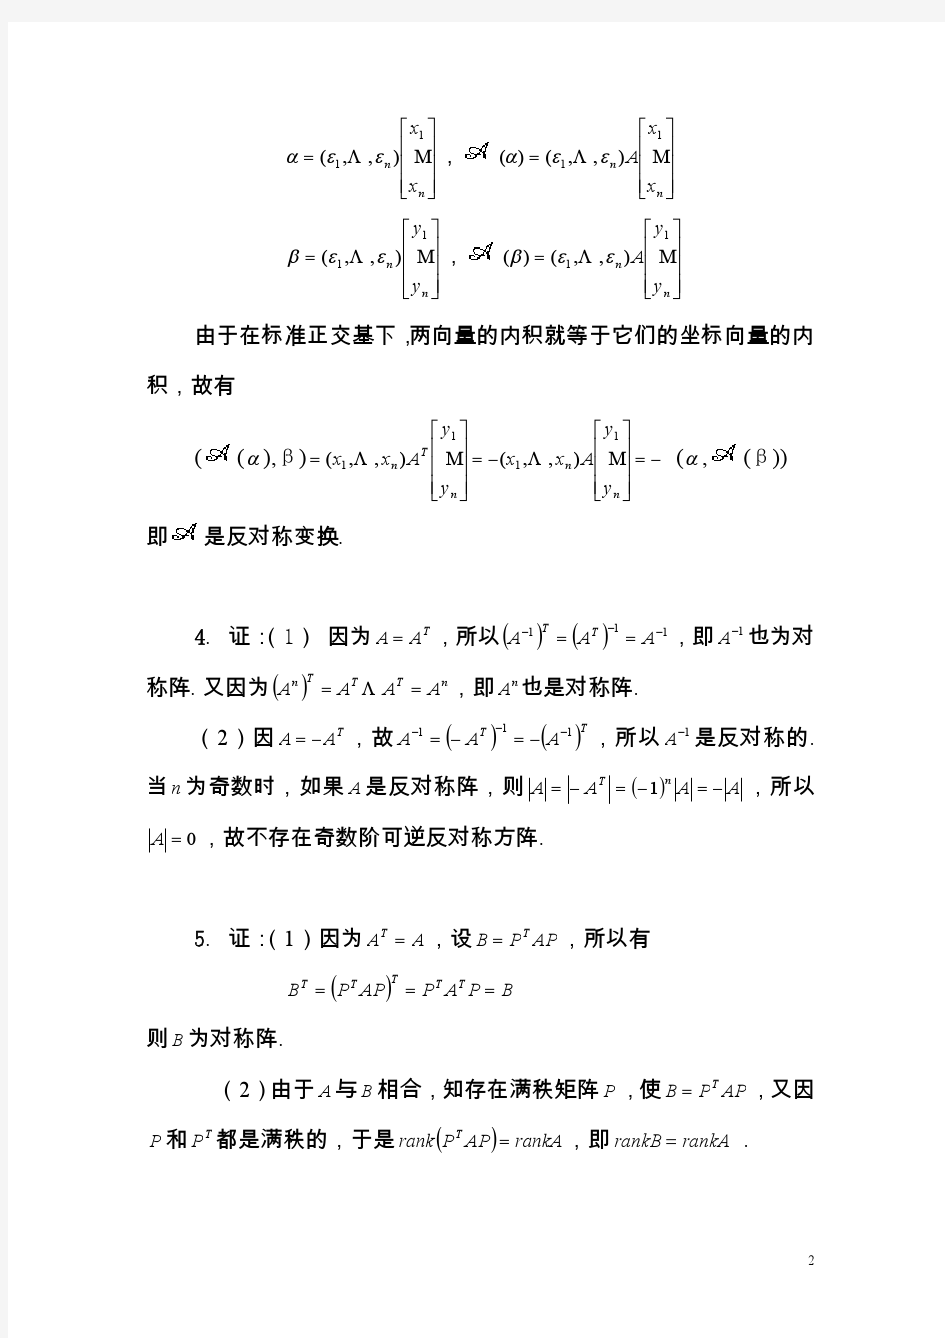 《矩阵论》习题答案,清华大学出版社,研究生教材习题 2.3